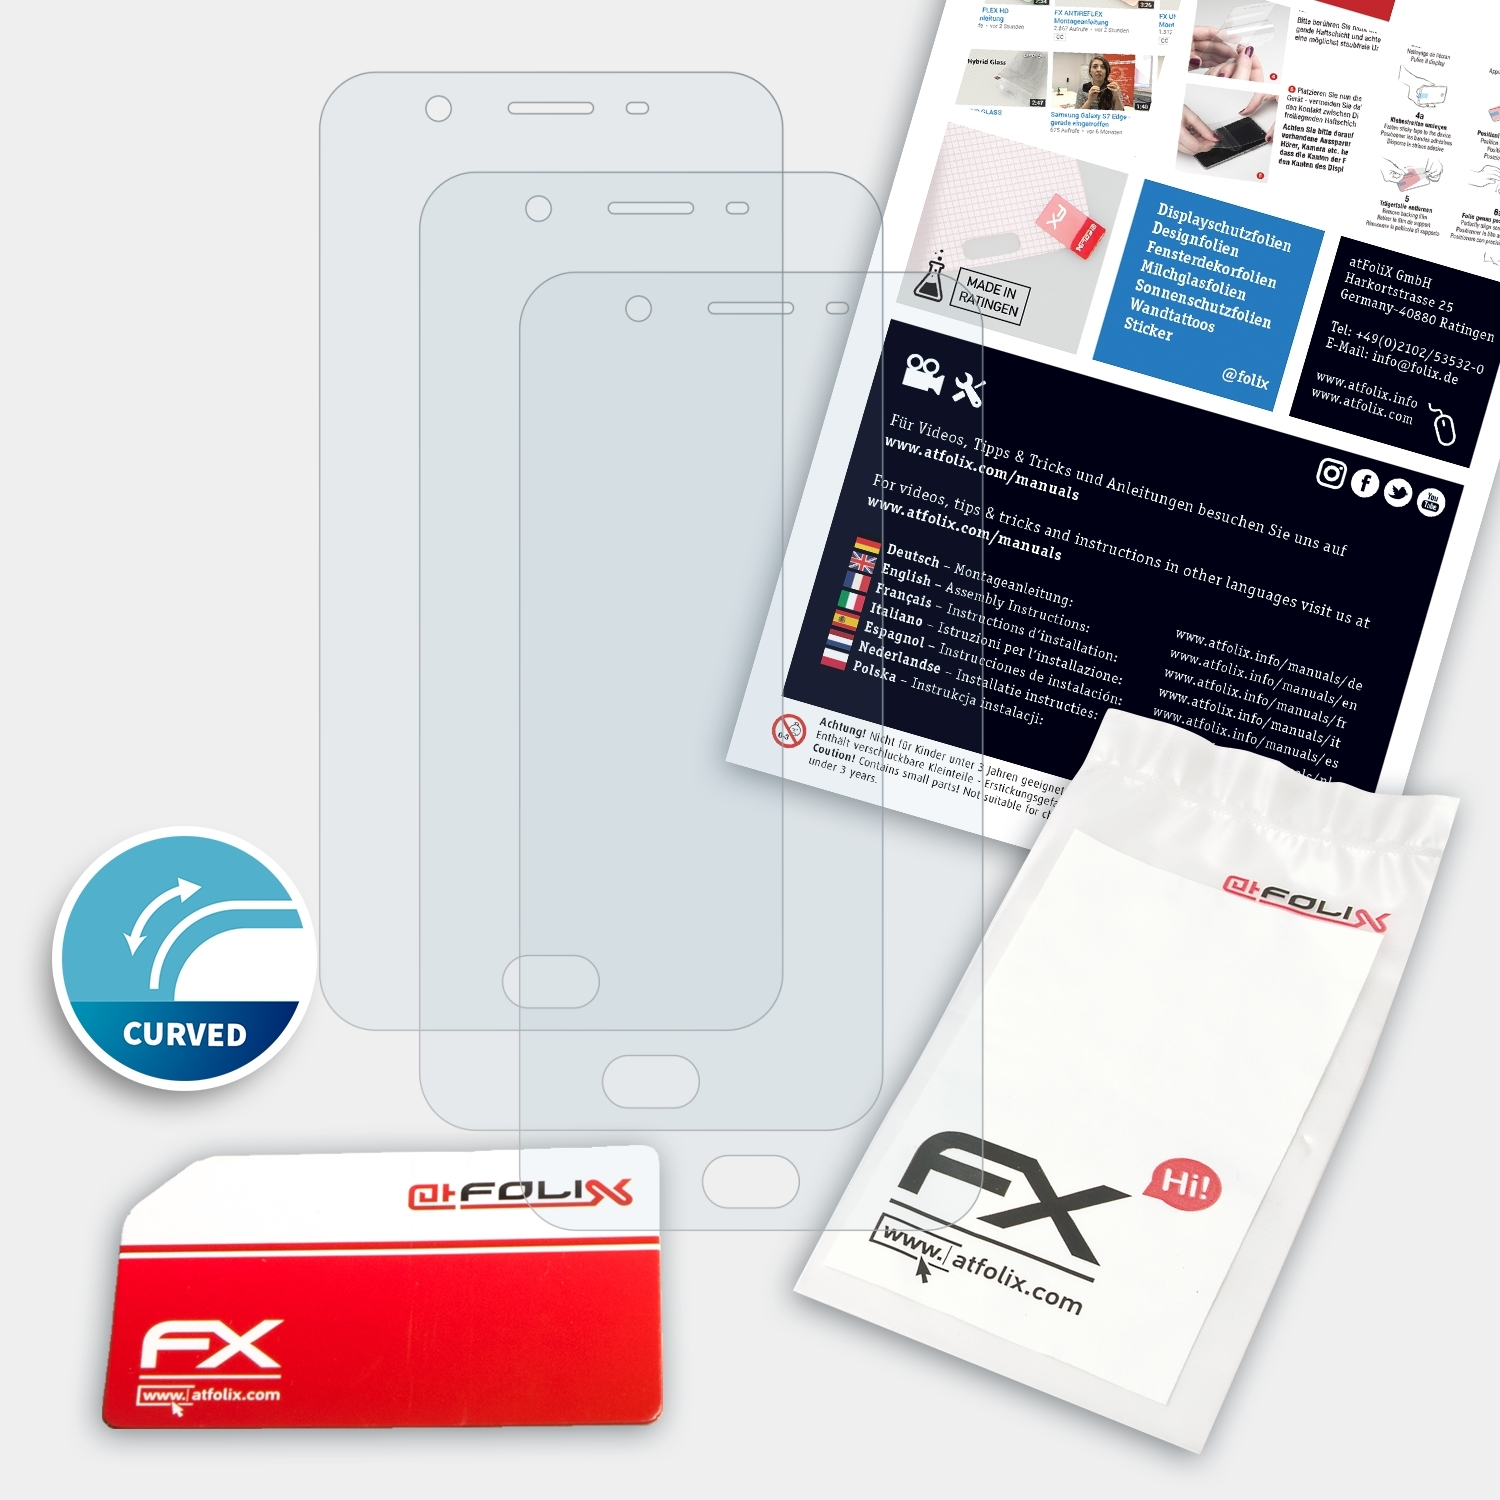 ATFOLIX 3x FX-ActiFleX Displayschutz(für F1s) Oppo